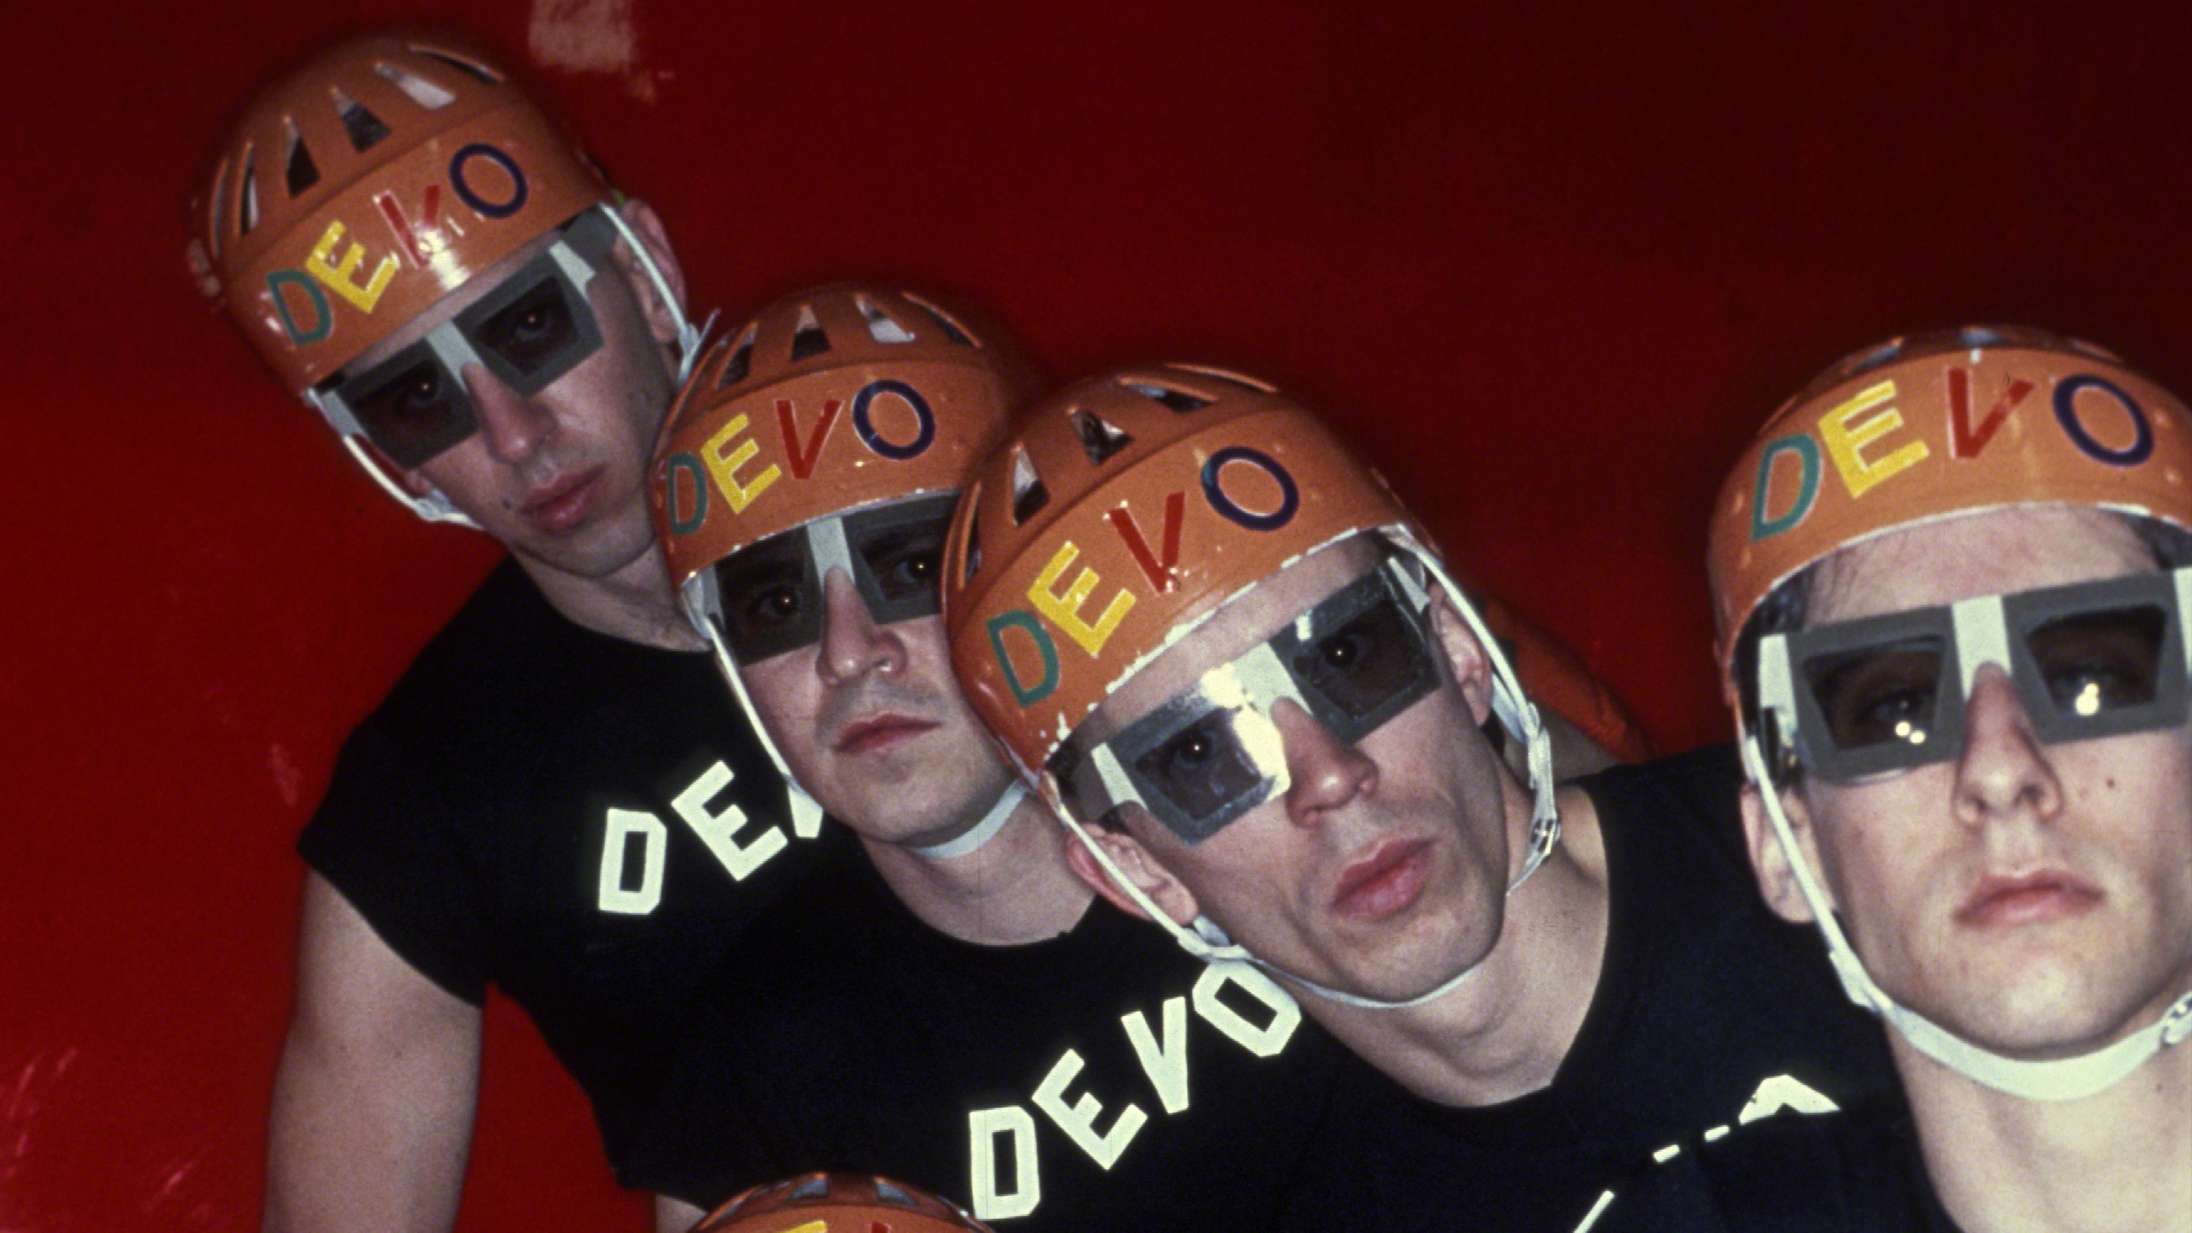 Nørdernes hævn: Danmarksaktuelle Devo har sat et uvurderligt aftryk på vor tids rockmusik